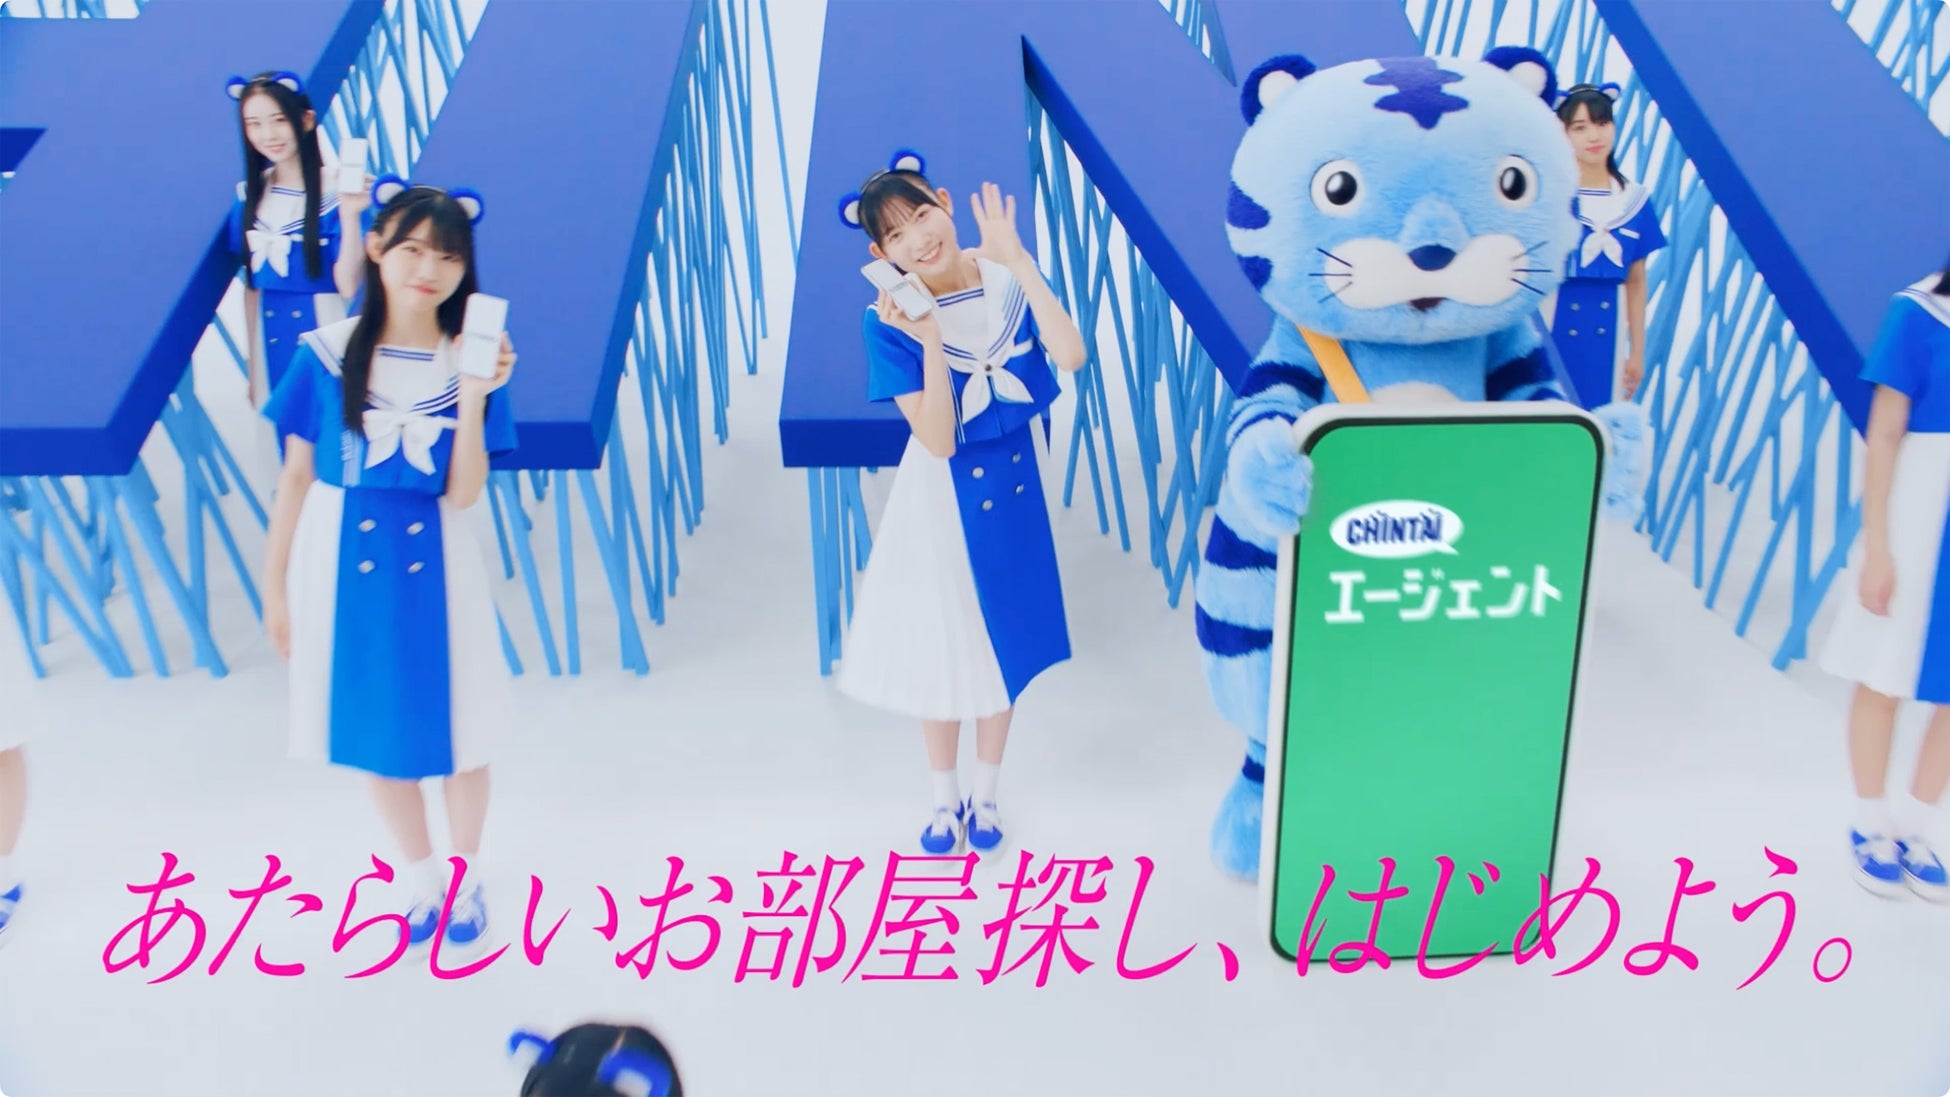 乃木坂46公式ライバル「僕が見たかった青空」がCHINTAIの新イメージキャラクターに就任テレビCM撮影に初挑戦！